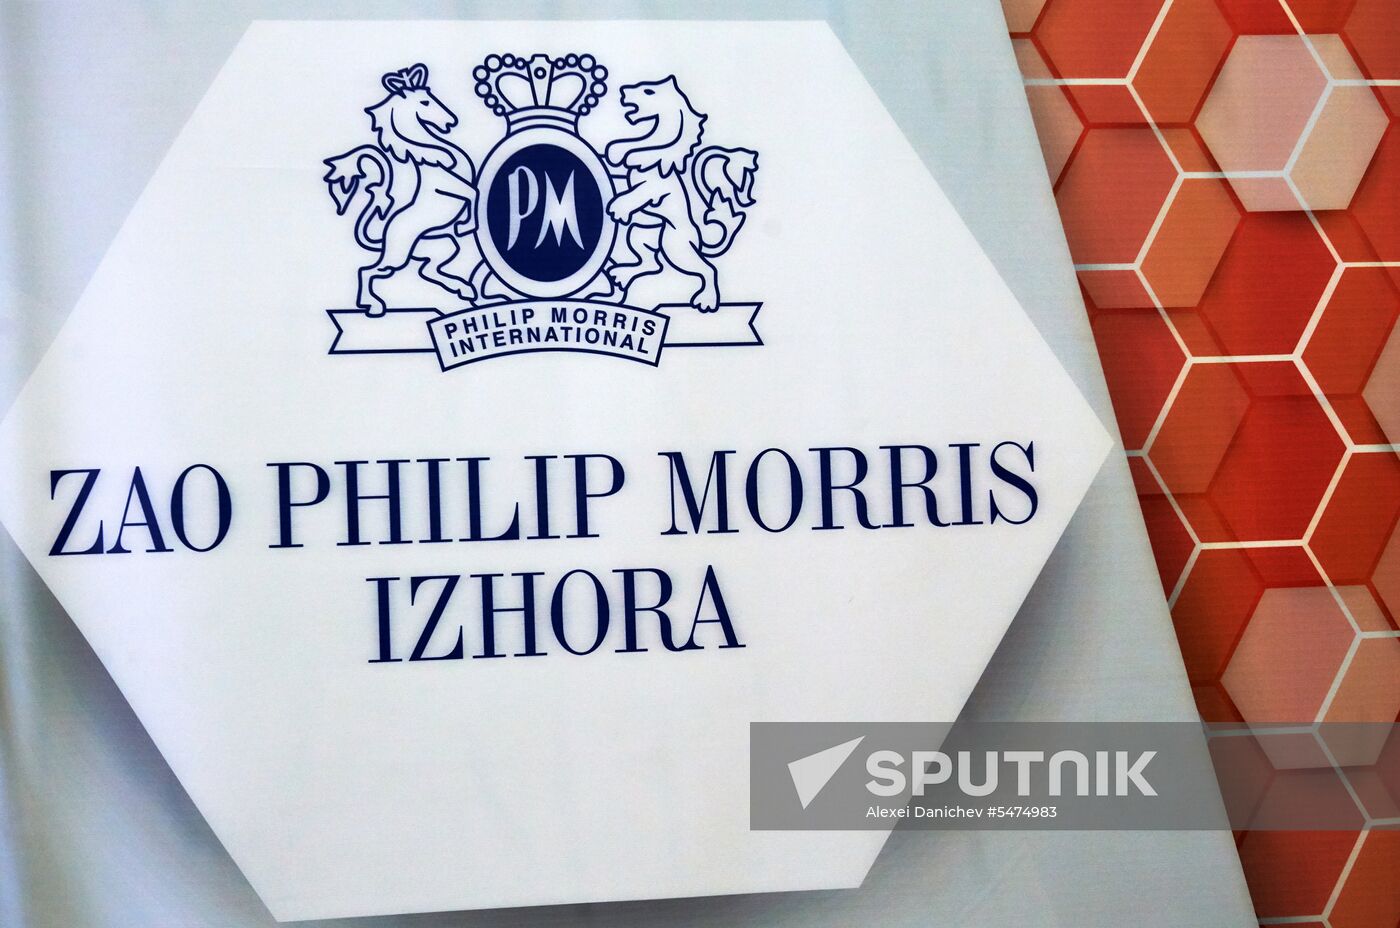 Philip Morris Izhora factory in Leningrad Region